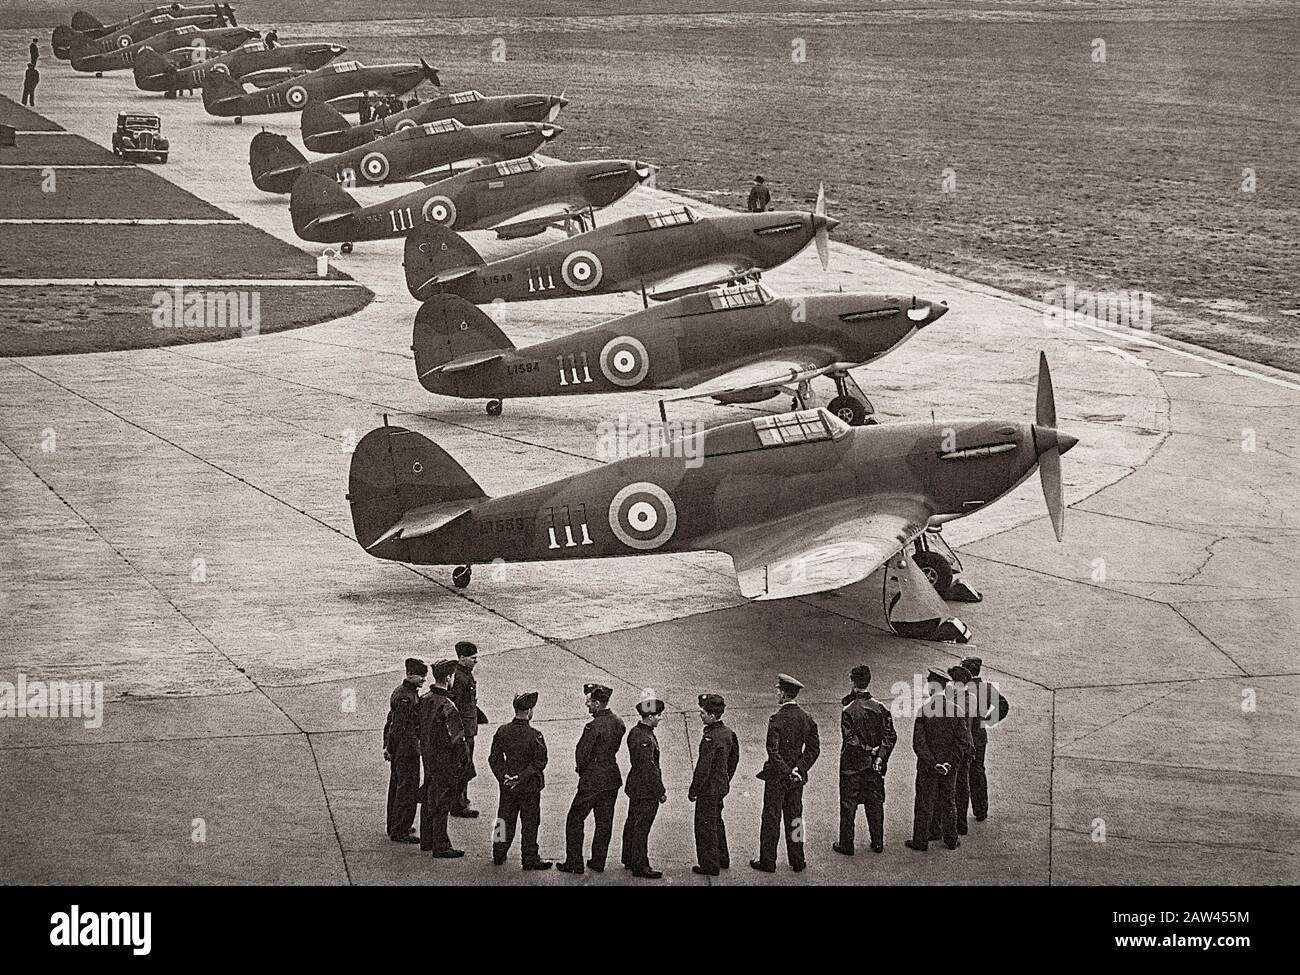 Ein Flug der neuen Hawker Hurricane I, dem einsitzigen Kampfflugzeug, das von Sir Sydney Camm entworfen wurde und mit 111 Squadron in RAF Northolt in Dienst gestellt wurde. Das monoplane Modell der Hawker Fury Doppelebene der frühen 1930er Jahre hatte ein einziehbares Fahrwerk und das leistungsstärkere Rolls-Royce Merlin-Triebwerk. Sie wurde von der Spitfire während der Schlacht um Großbritannien im Jahr 1940 überschattet, aber der Hurrikan fügte rund 70 % der Verluste der Luftwaffe bei dem Engagement zu und kämpfte in allen großen Theatern des Zweiten Weltkriegs. Stockfoto